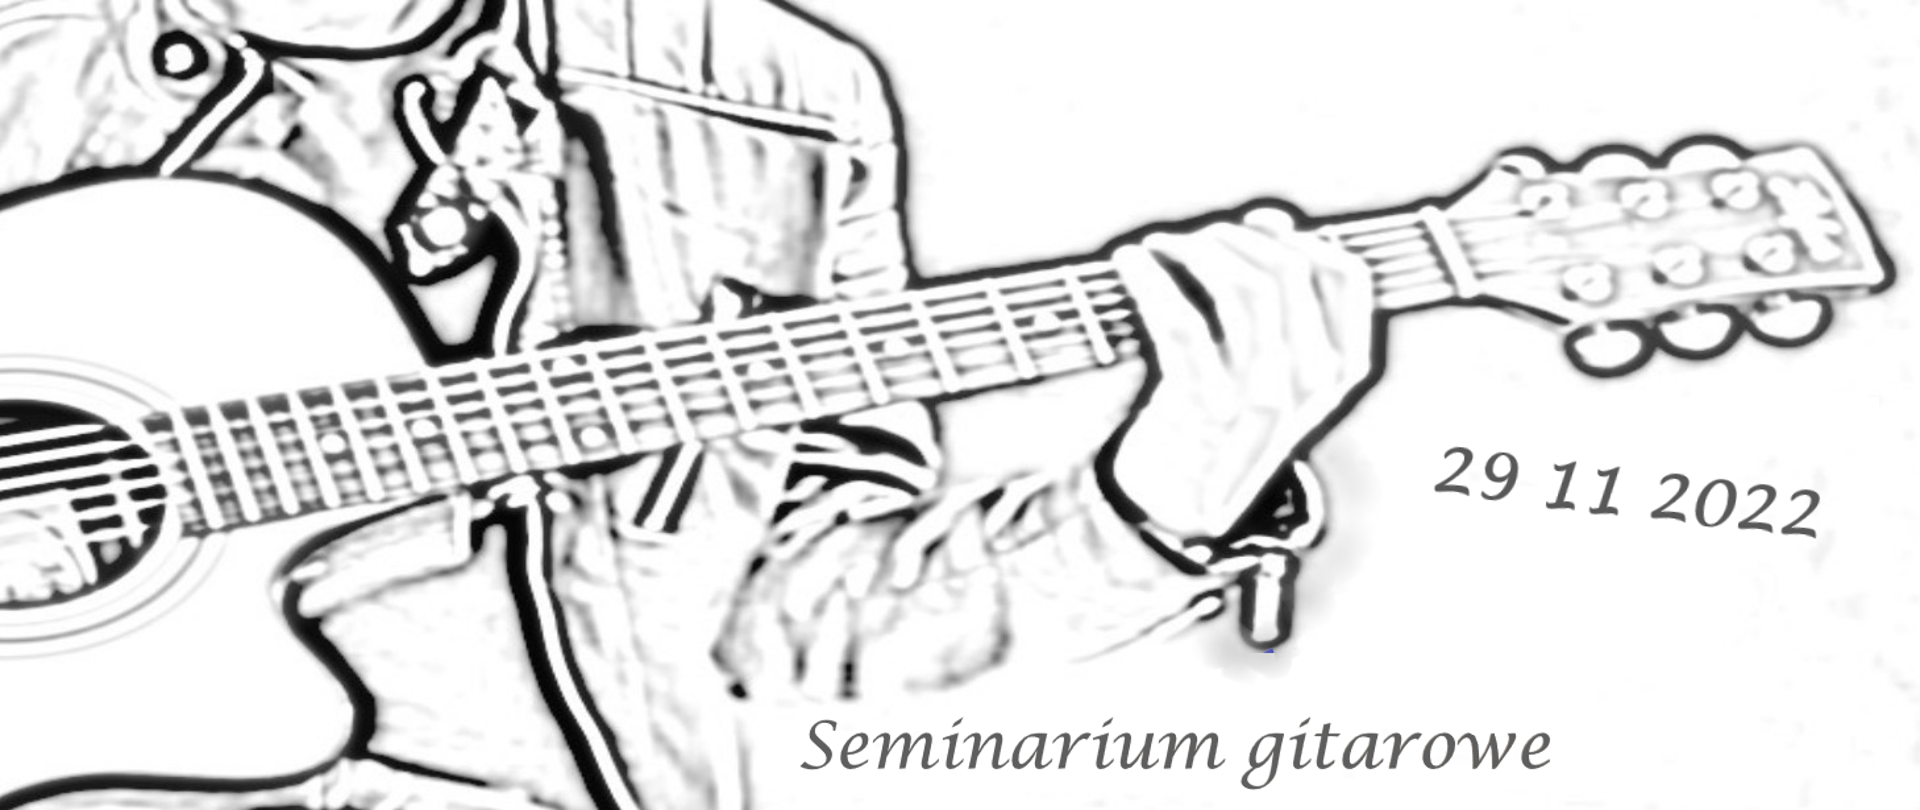 Obraz przedstawia grającego na gitarze i jest informacja o seminarium gitarowym 29.11.2022